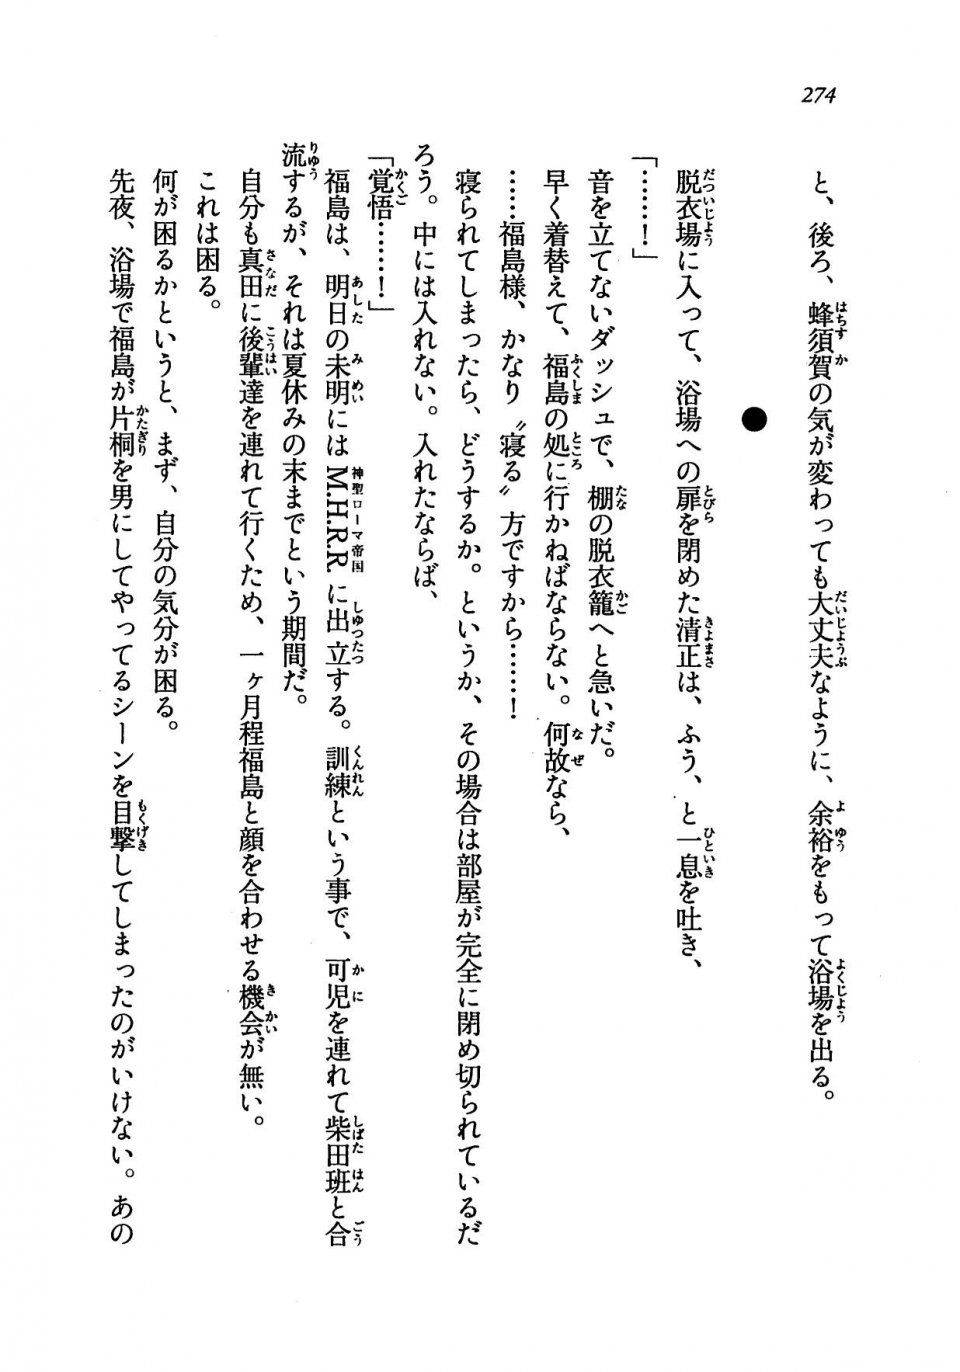 Kyoukai Senjou no Horizon LN Vol 19(8A) - Photo #274